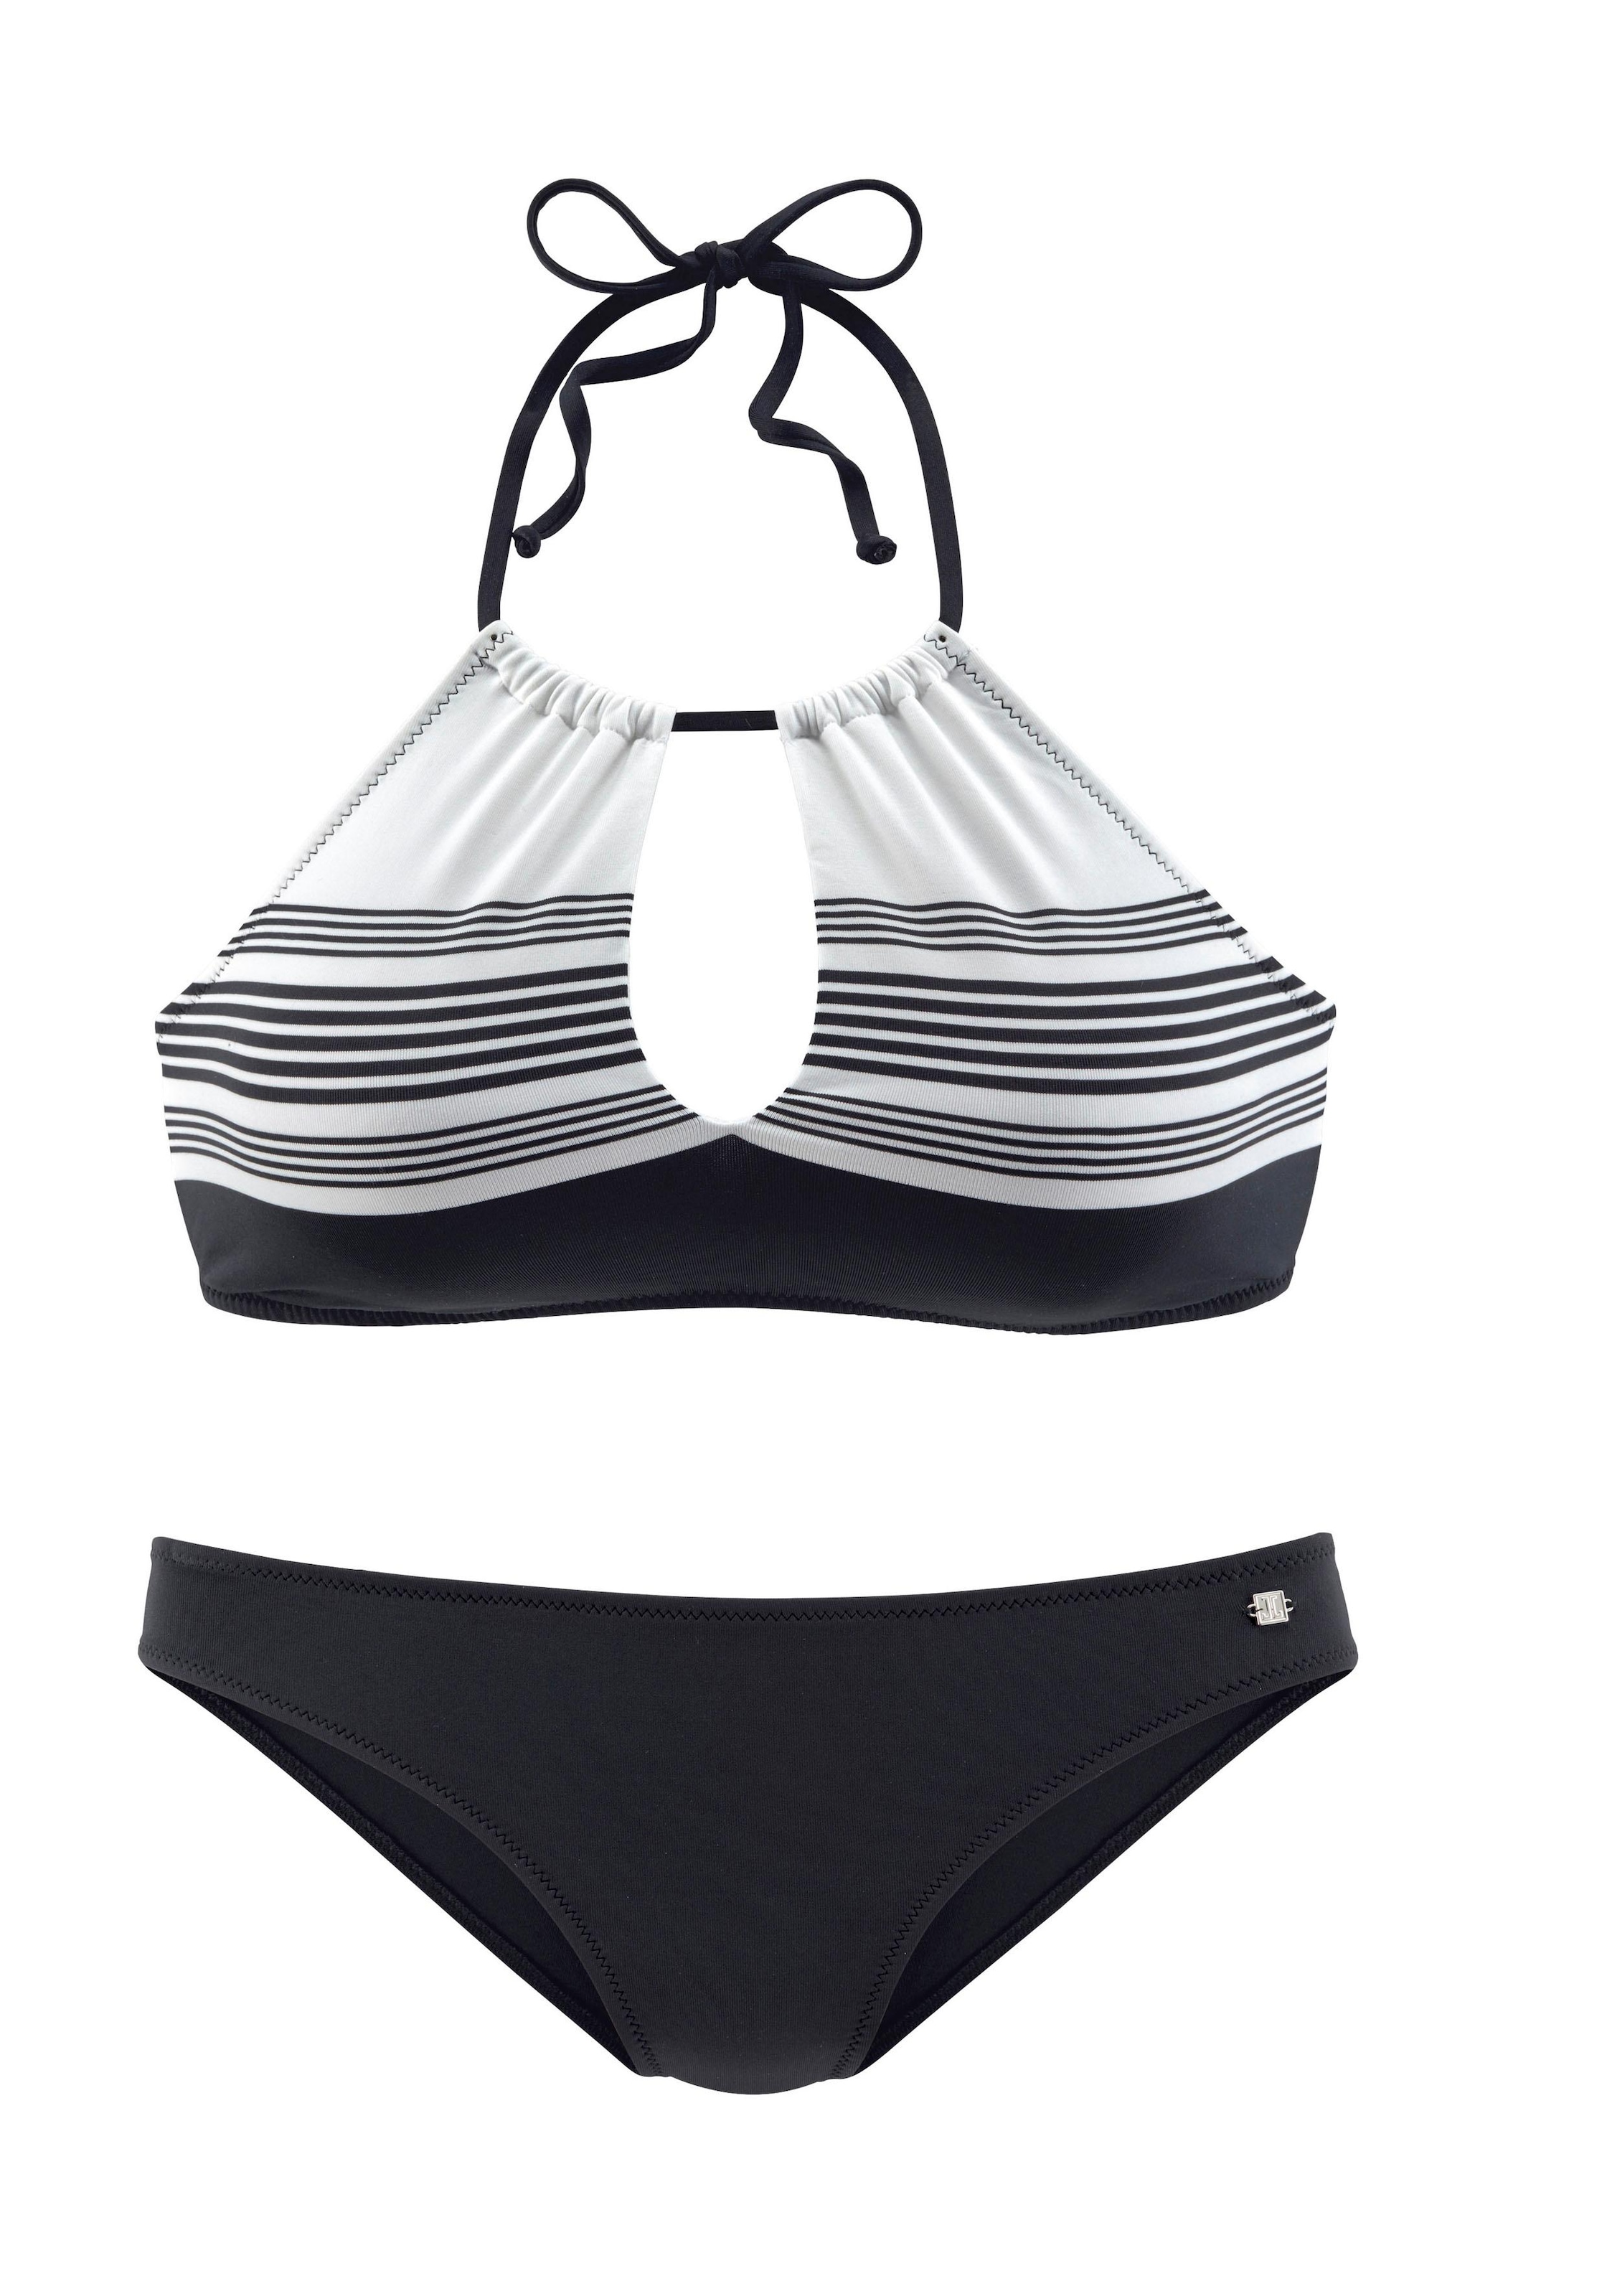 JETTE Bustier-Bikini, mit hochwertigem Design